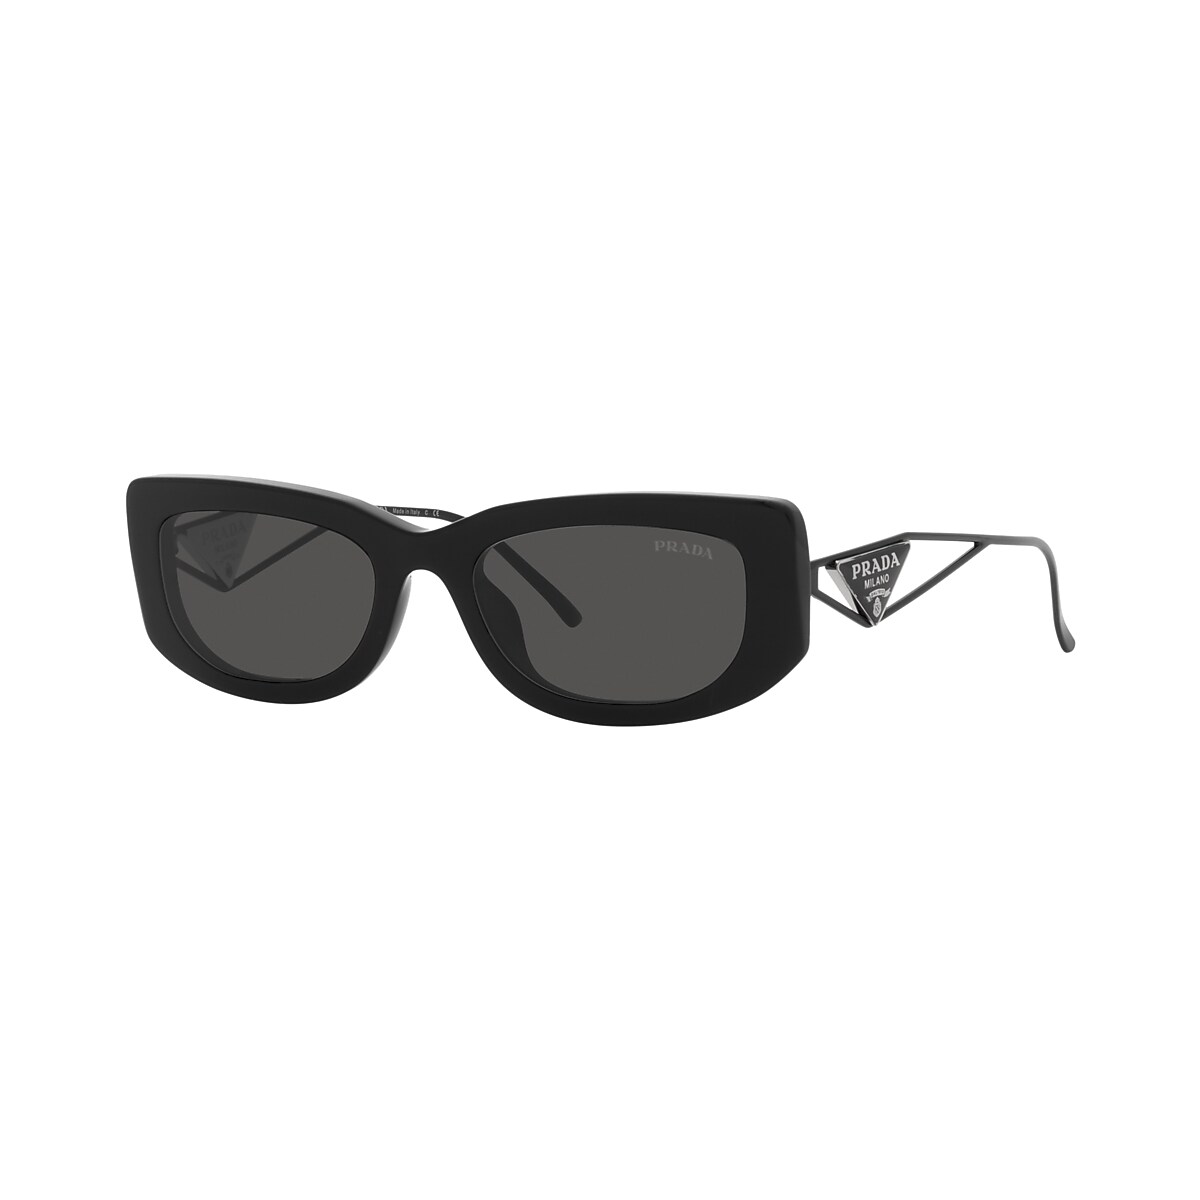 Prada PR 14YS 53 Dark Grey & Black Sunglasses | Sunglass Hut United Kingdom